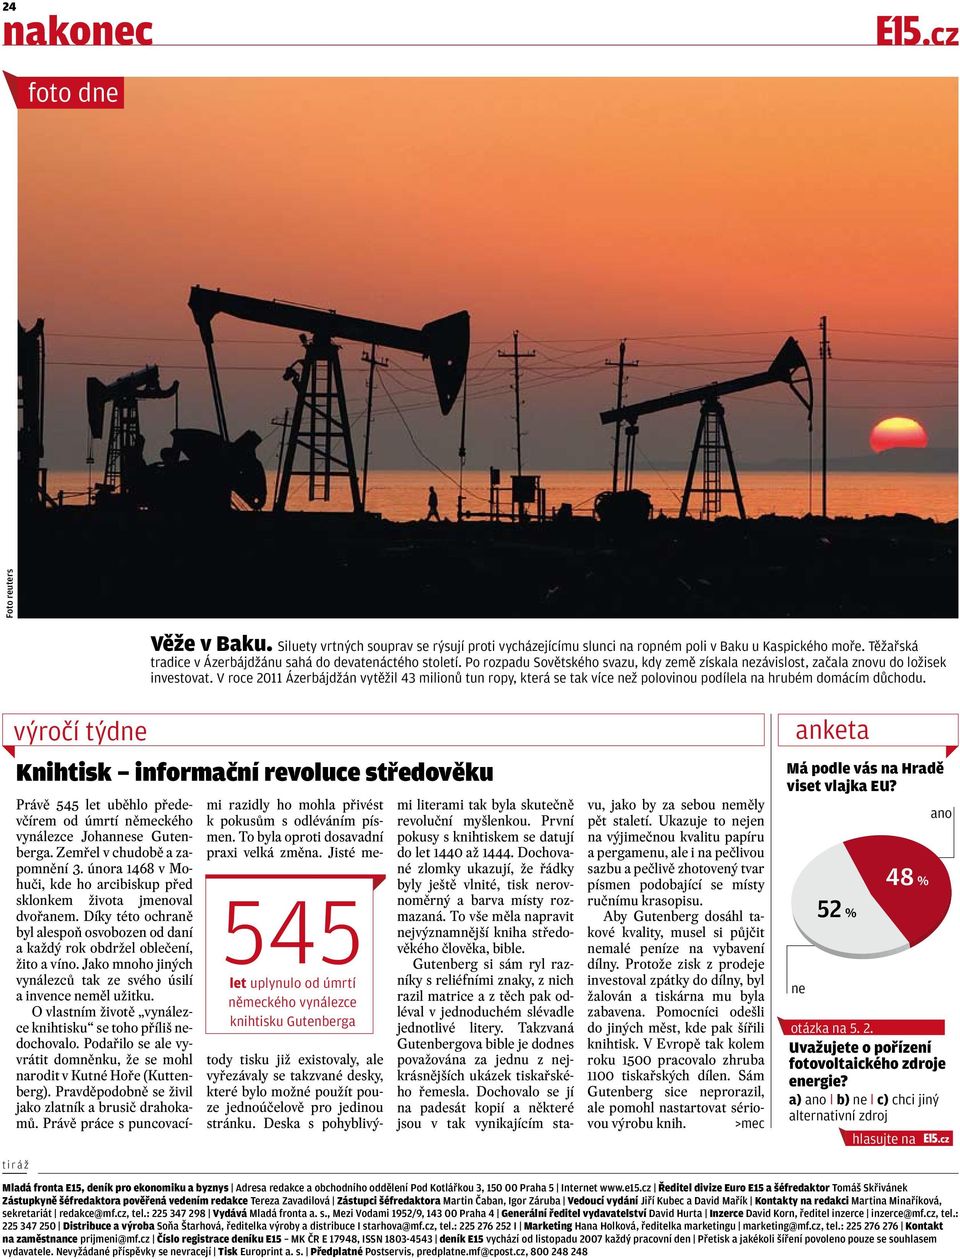 V roce 2011 Ázerbájdžán vytěžil 43 milionů tun ropy, která se tak více než polovinou podílela na hrubém domácím důchodu.